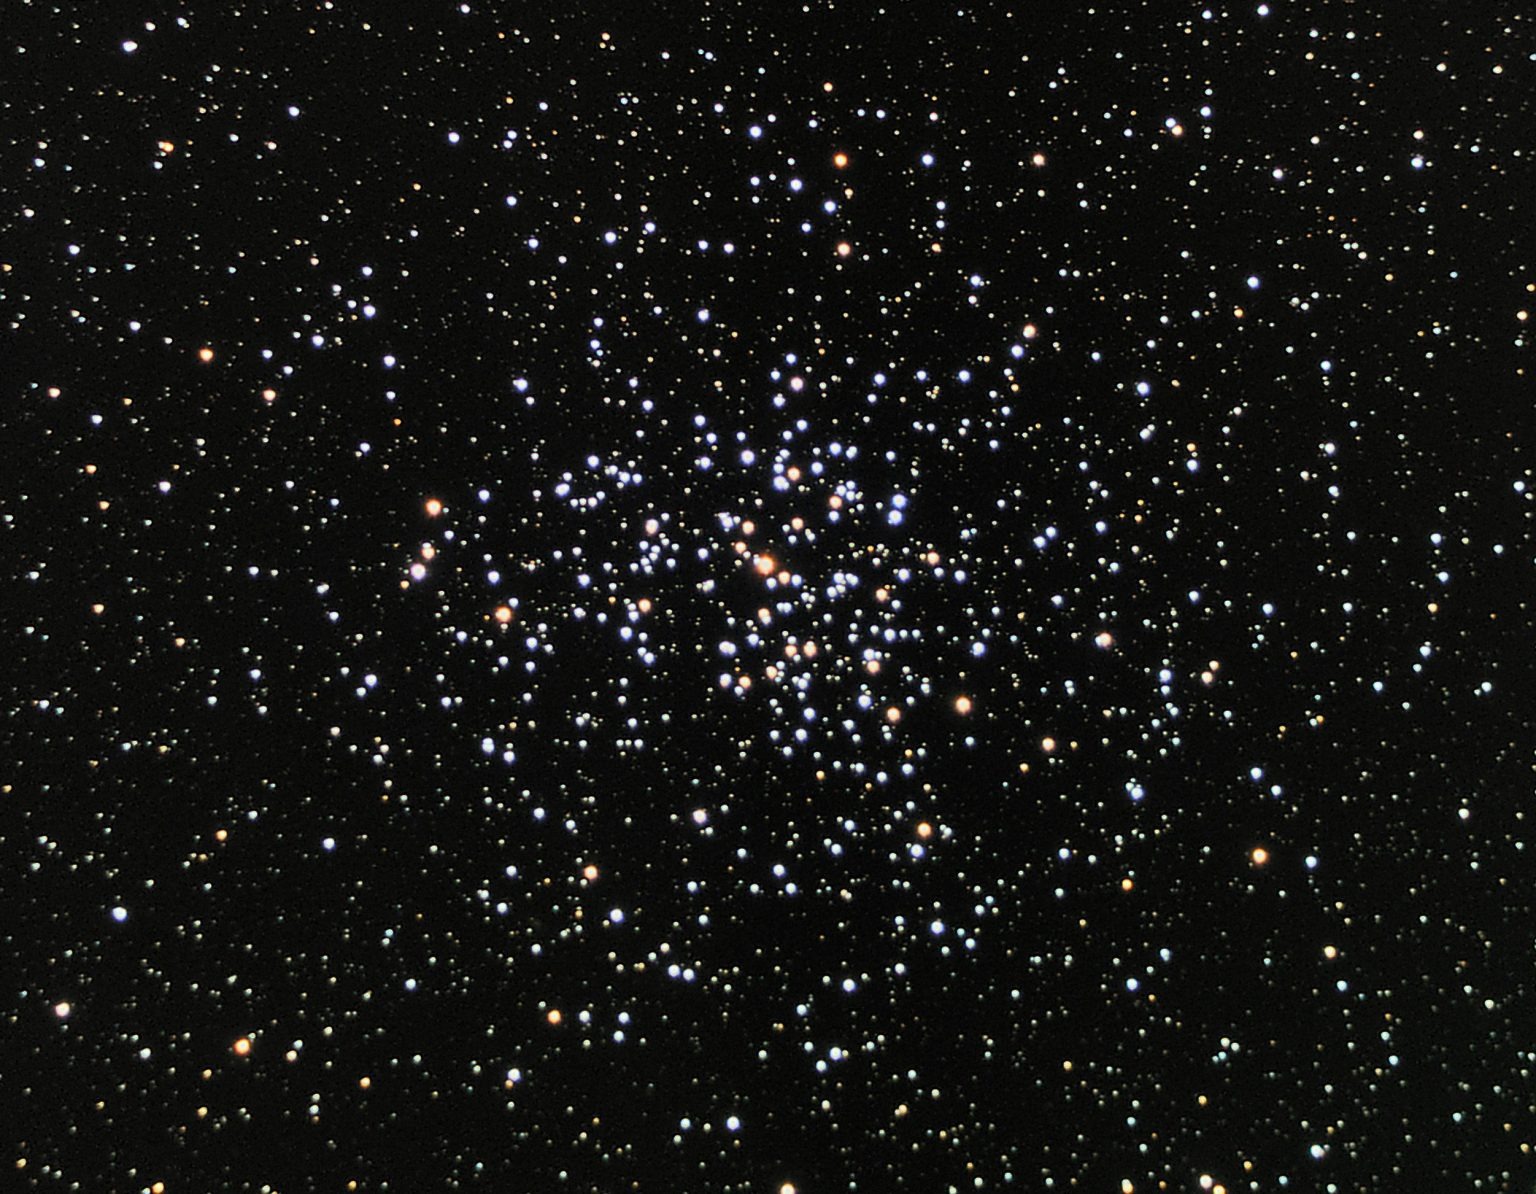 Otvoreni skup ili klaster – tip zvjezdanog skupa koji se sastoji od nekoliko tisuća zvijezda koje su nastale iz istog divovskog molekularnog oblaka i imaju otprilike istu starost – Messier 37 u zviježđu Kočijaš (©WikimediaCommons).